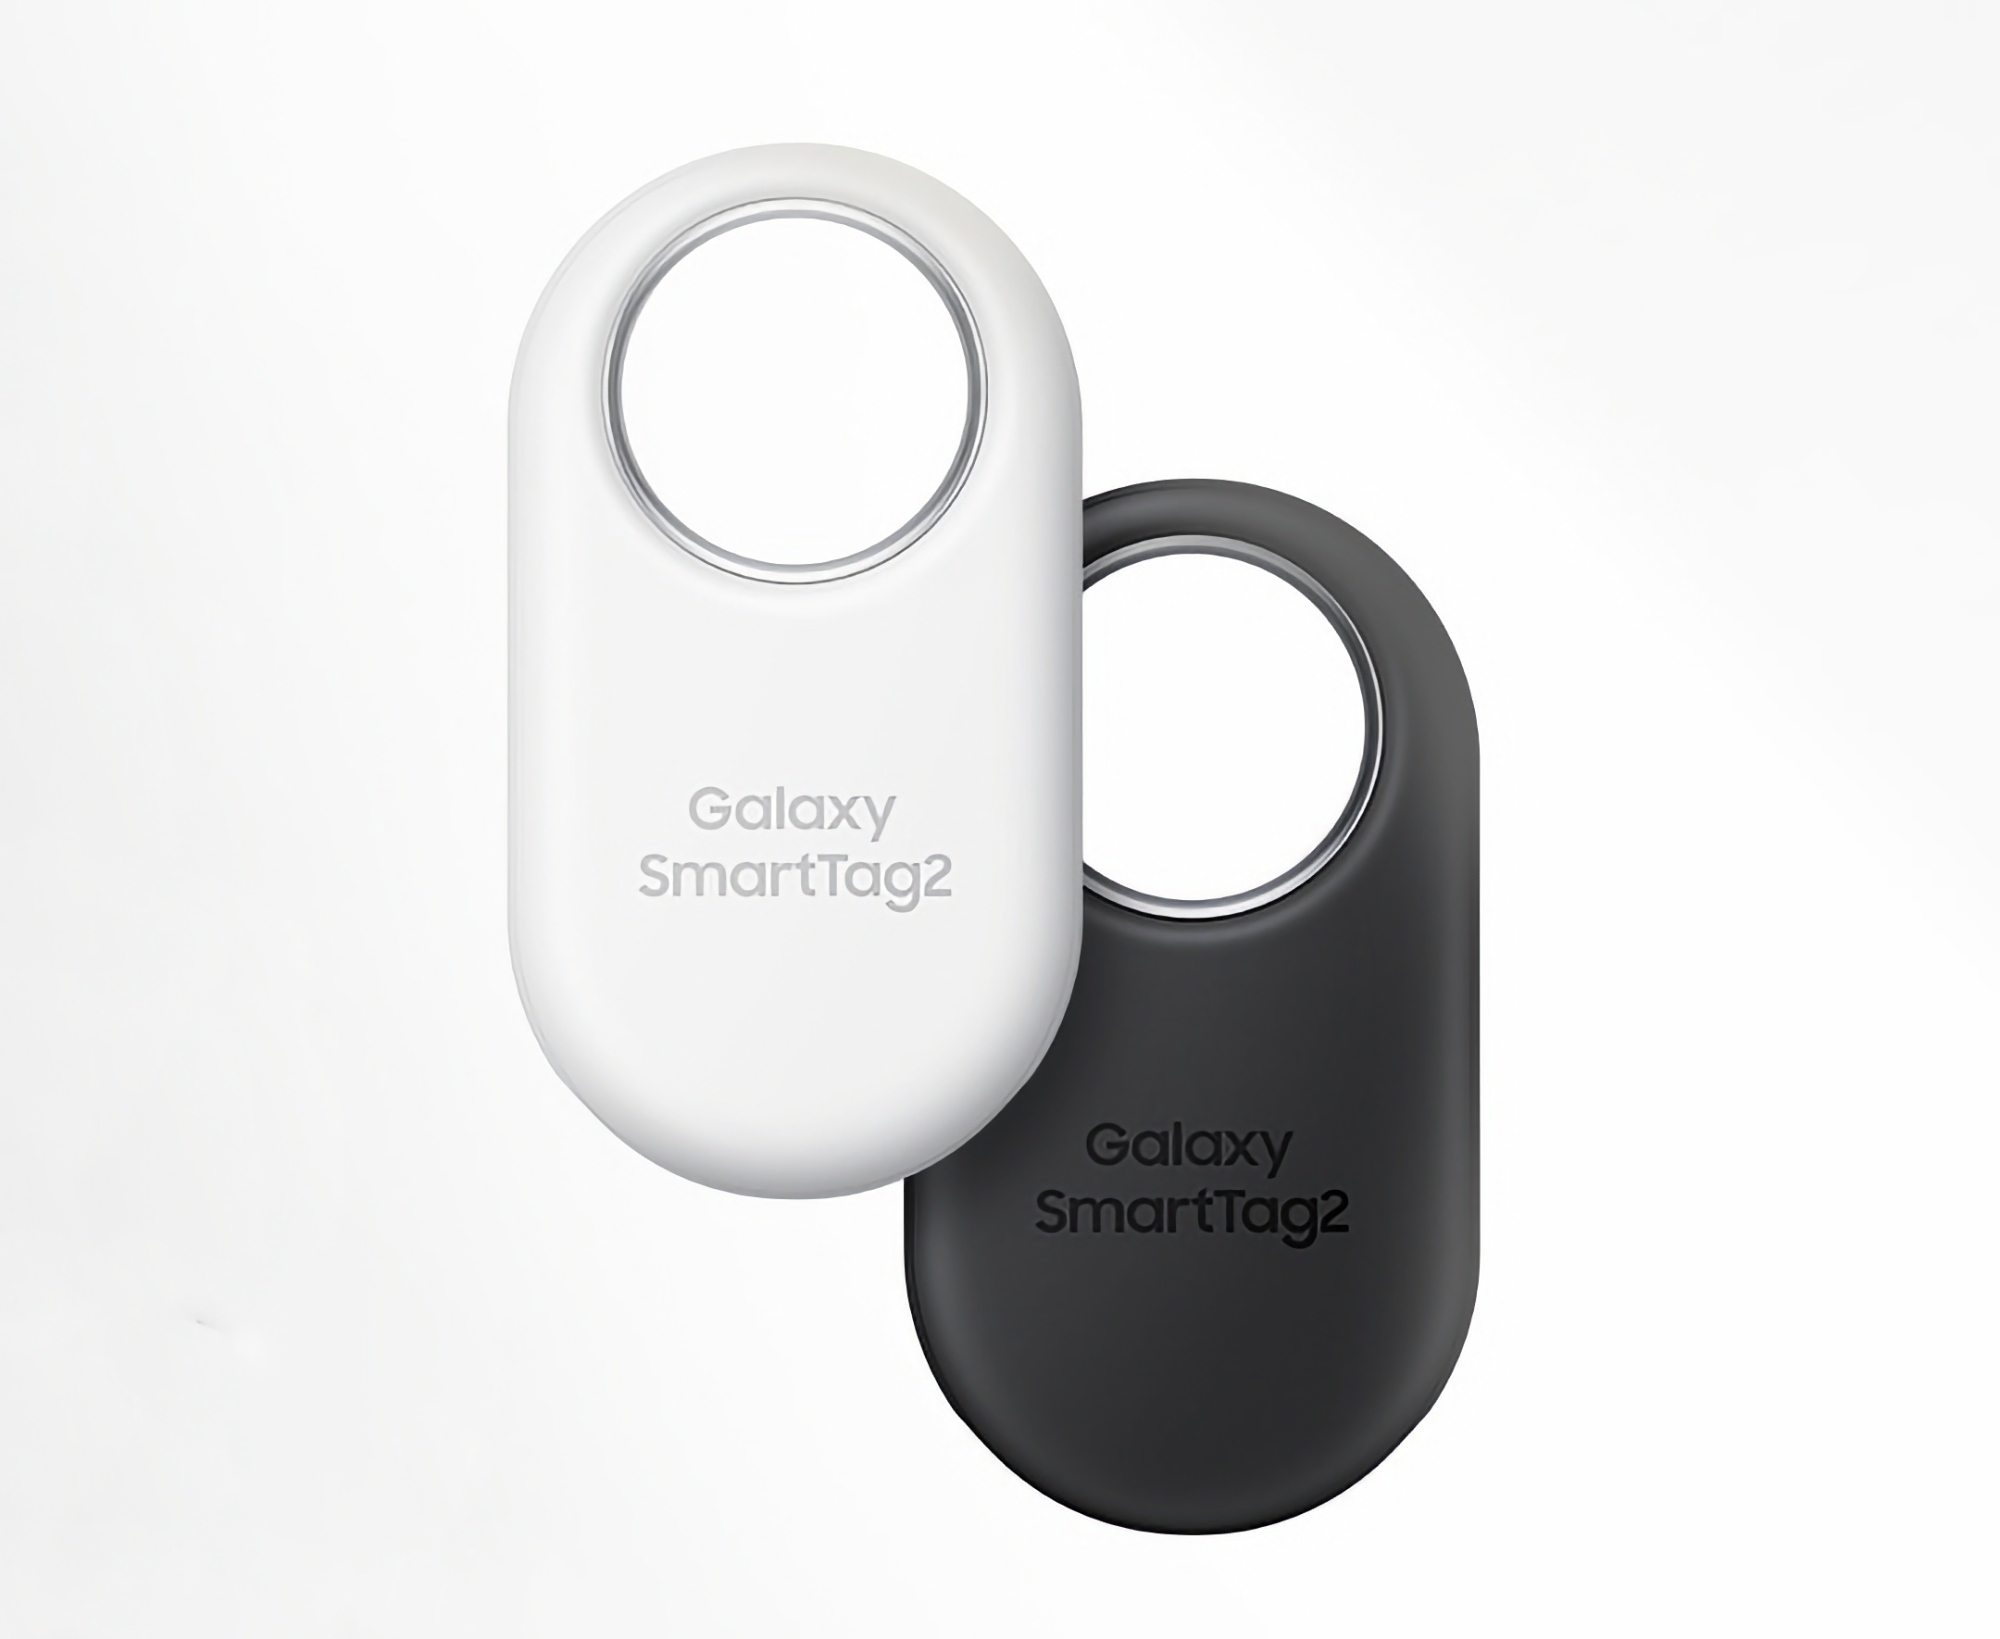 Samsung Galaxy SmartTag 2 kann auf Amazon zu einem Sonderpreis gekauft werden